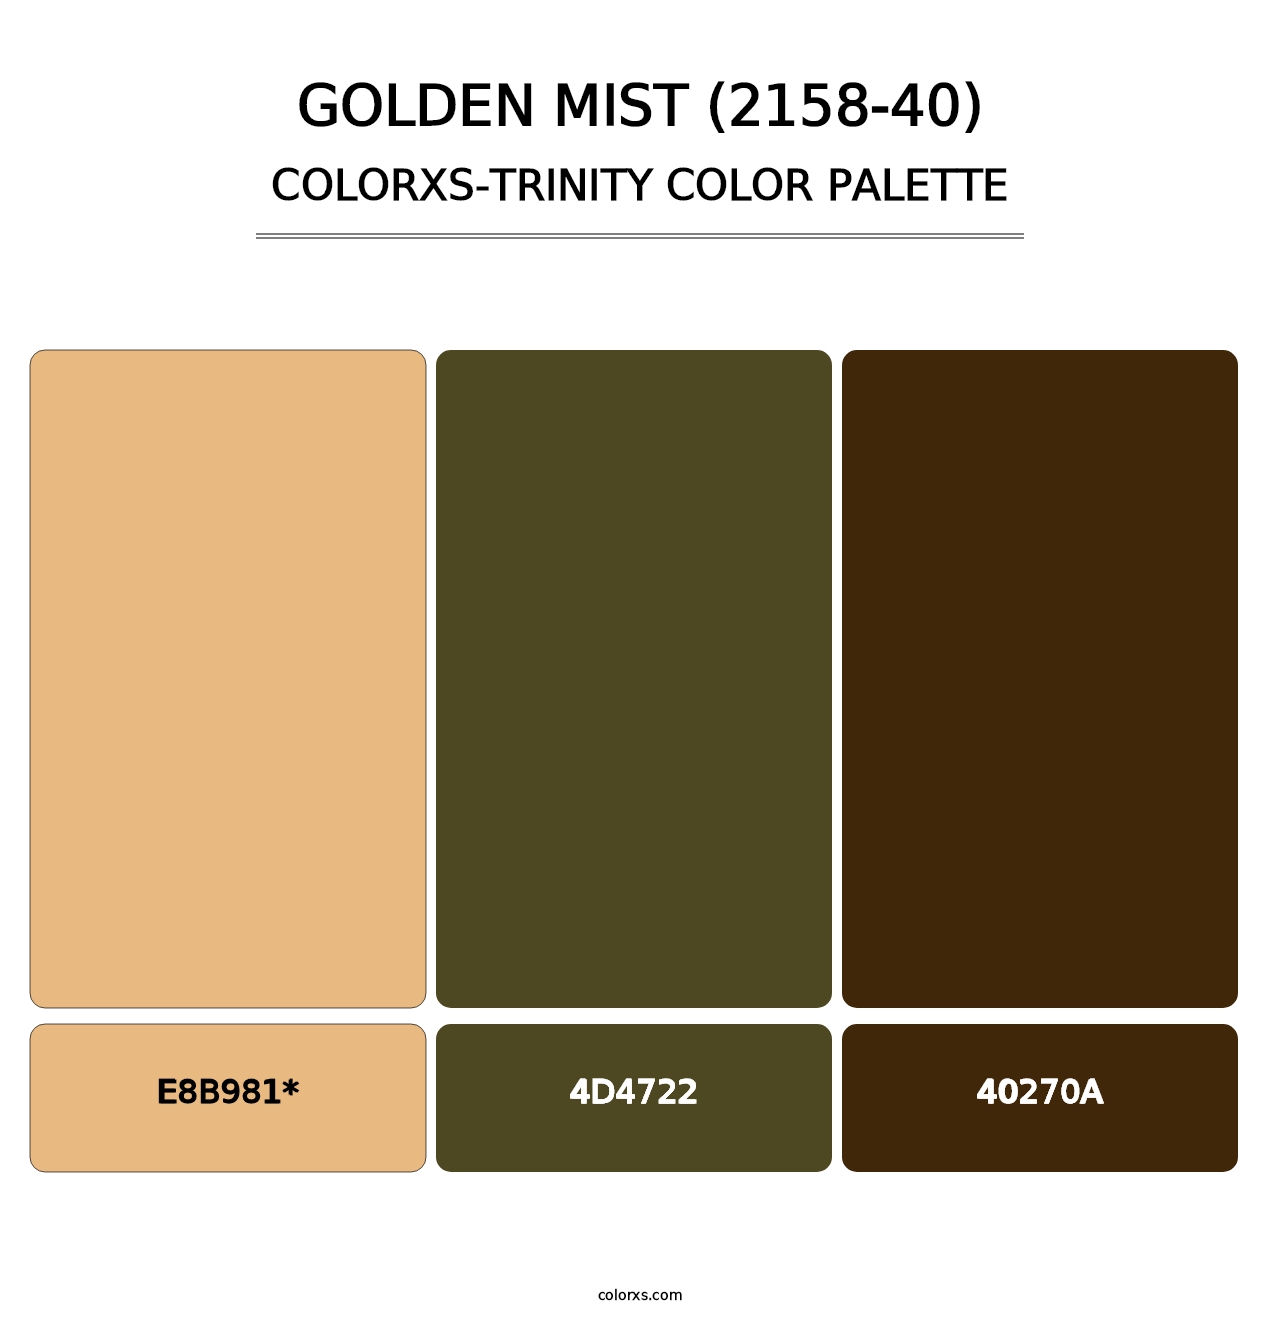 Golden Mist (2158-40) - Colorxs Trinity Palette